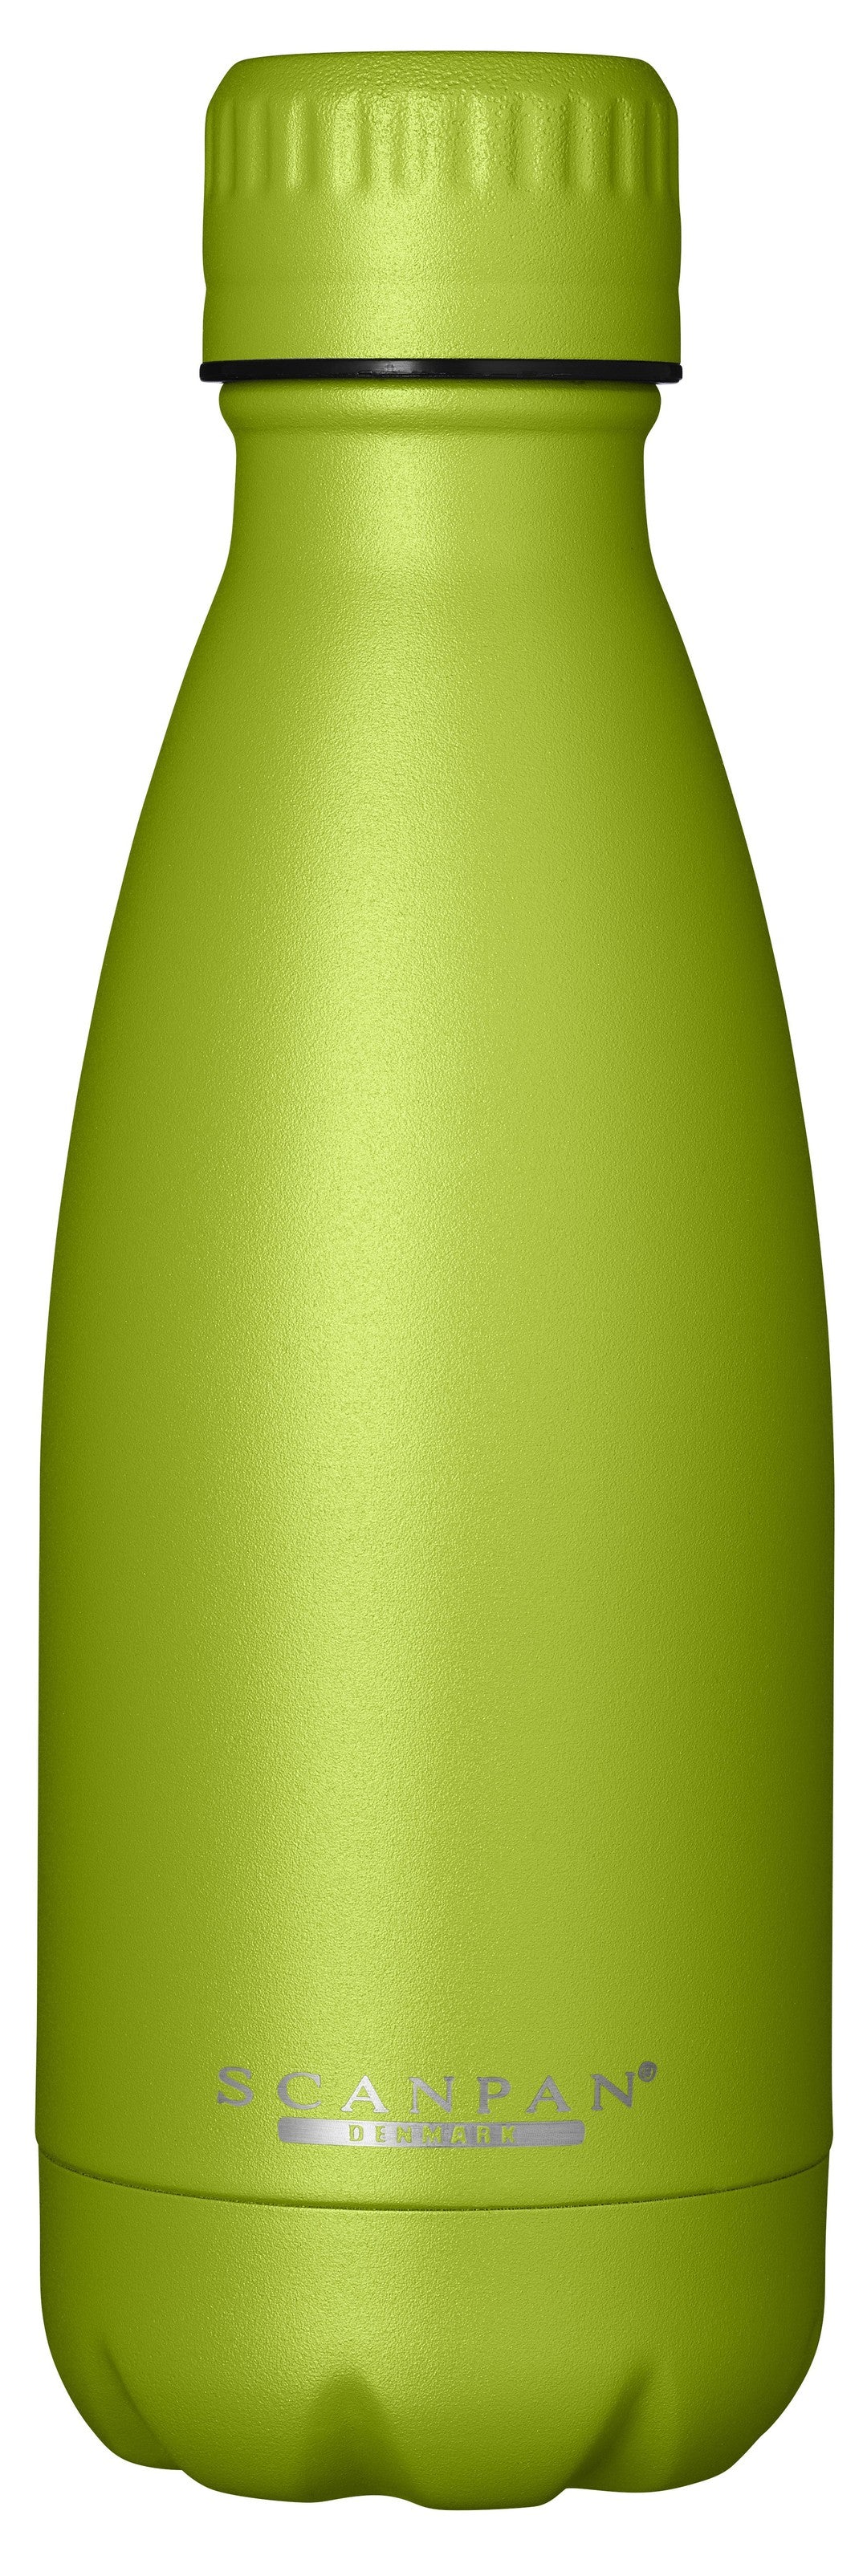 Scanpan To Go Termoflaske - 350ml - Lime Grenn